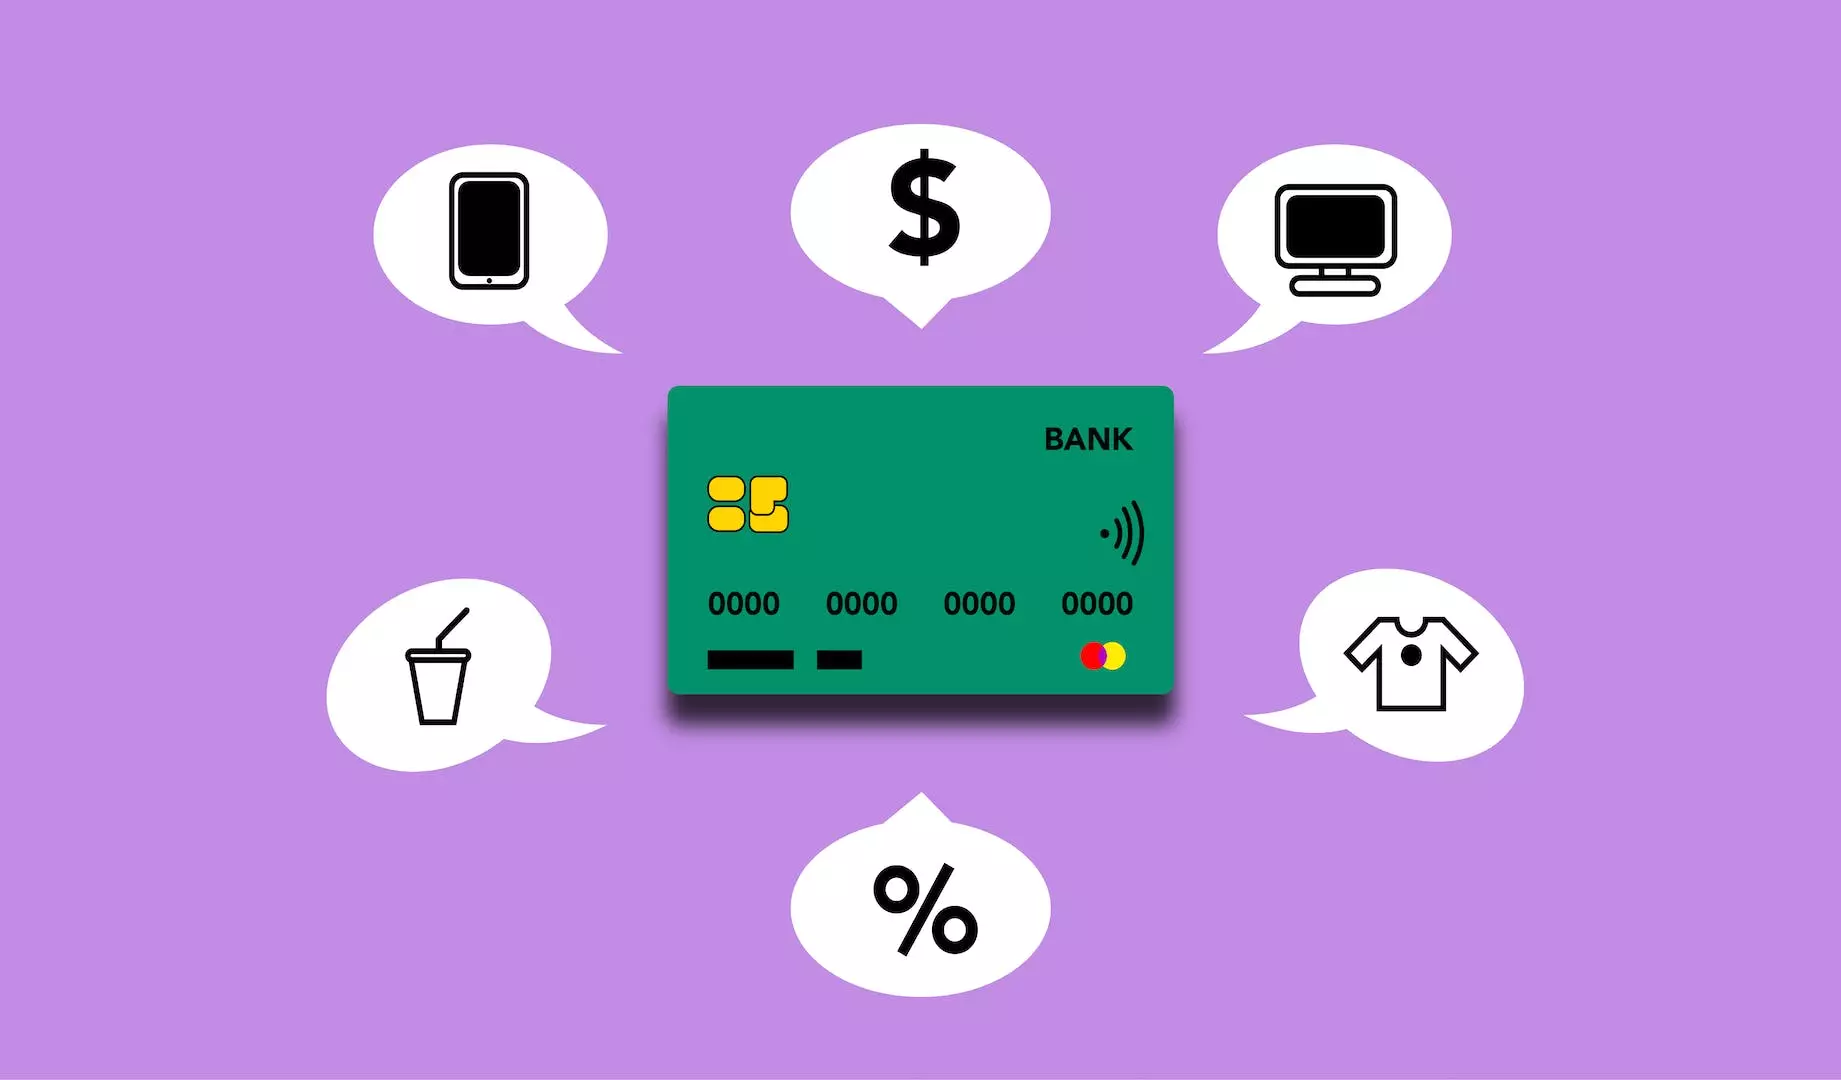 Er 'BankID på mobil' en skjult kostnad? En dypdykk i mobilbanking og dets potensielle kostnader